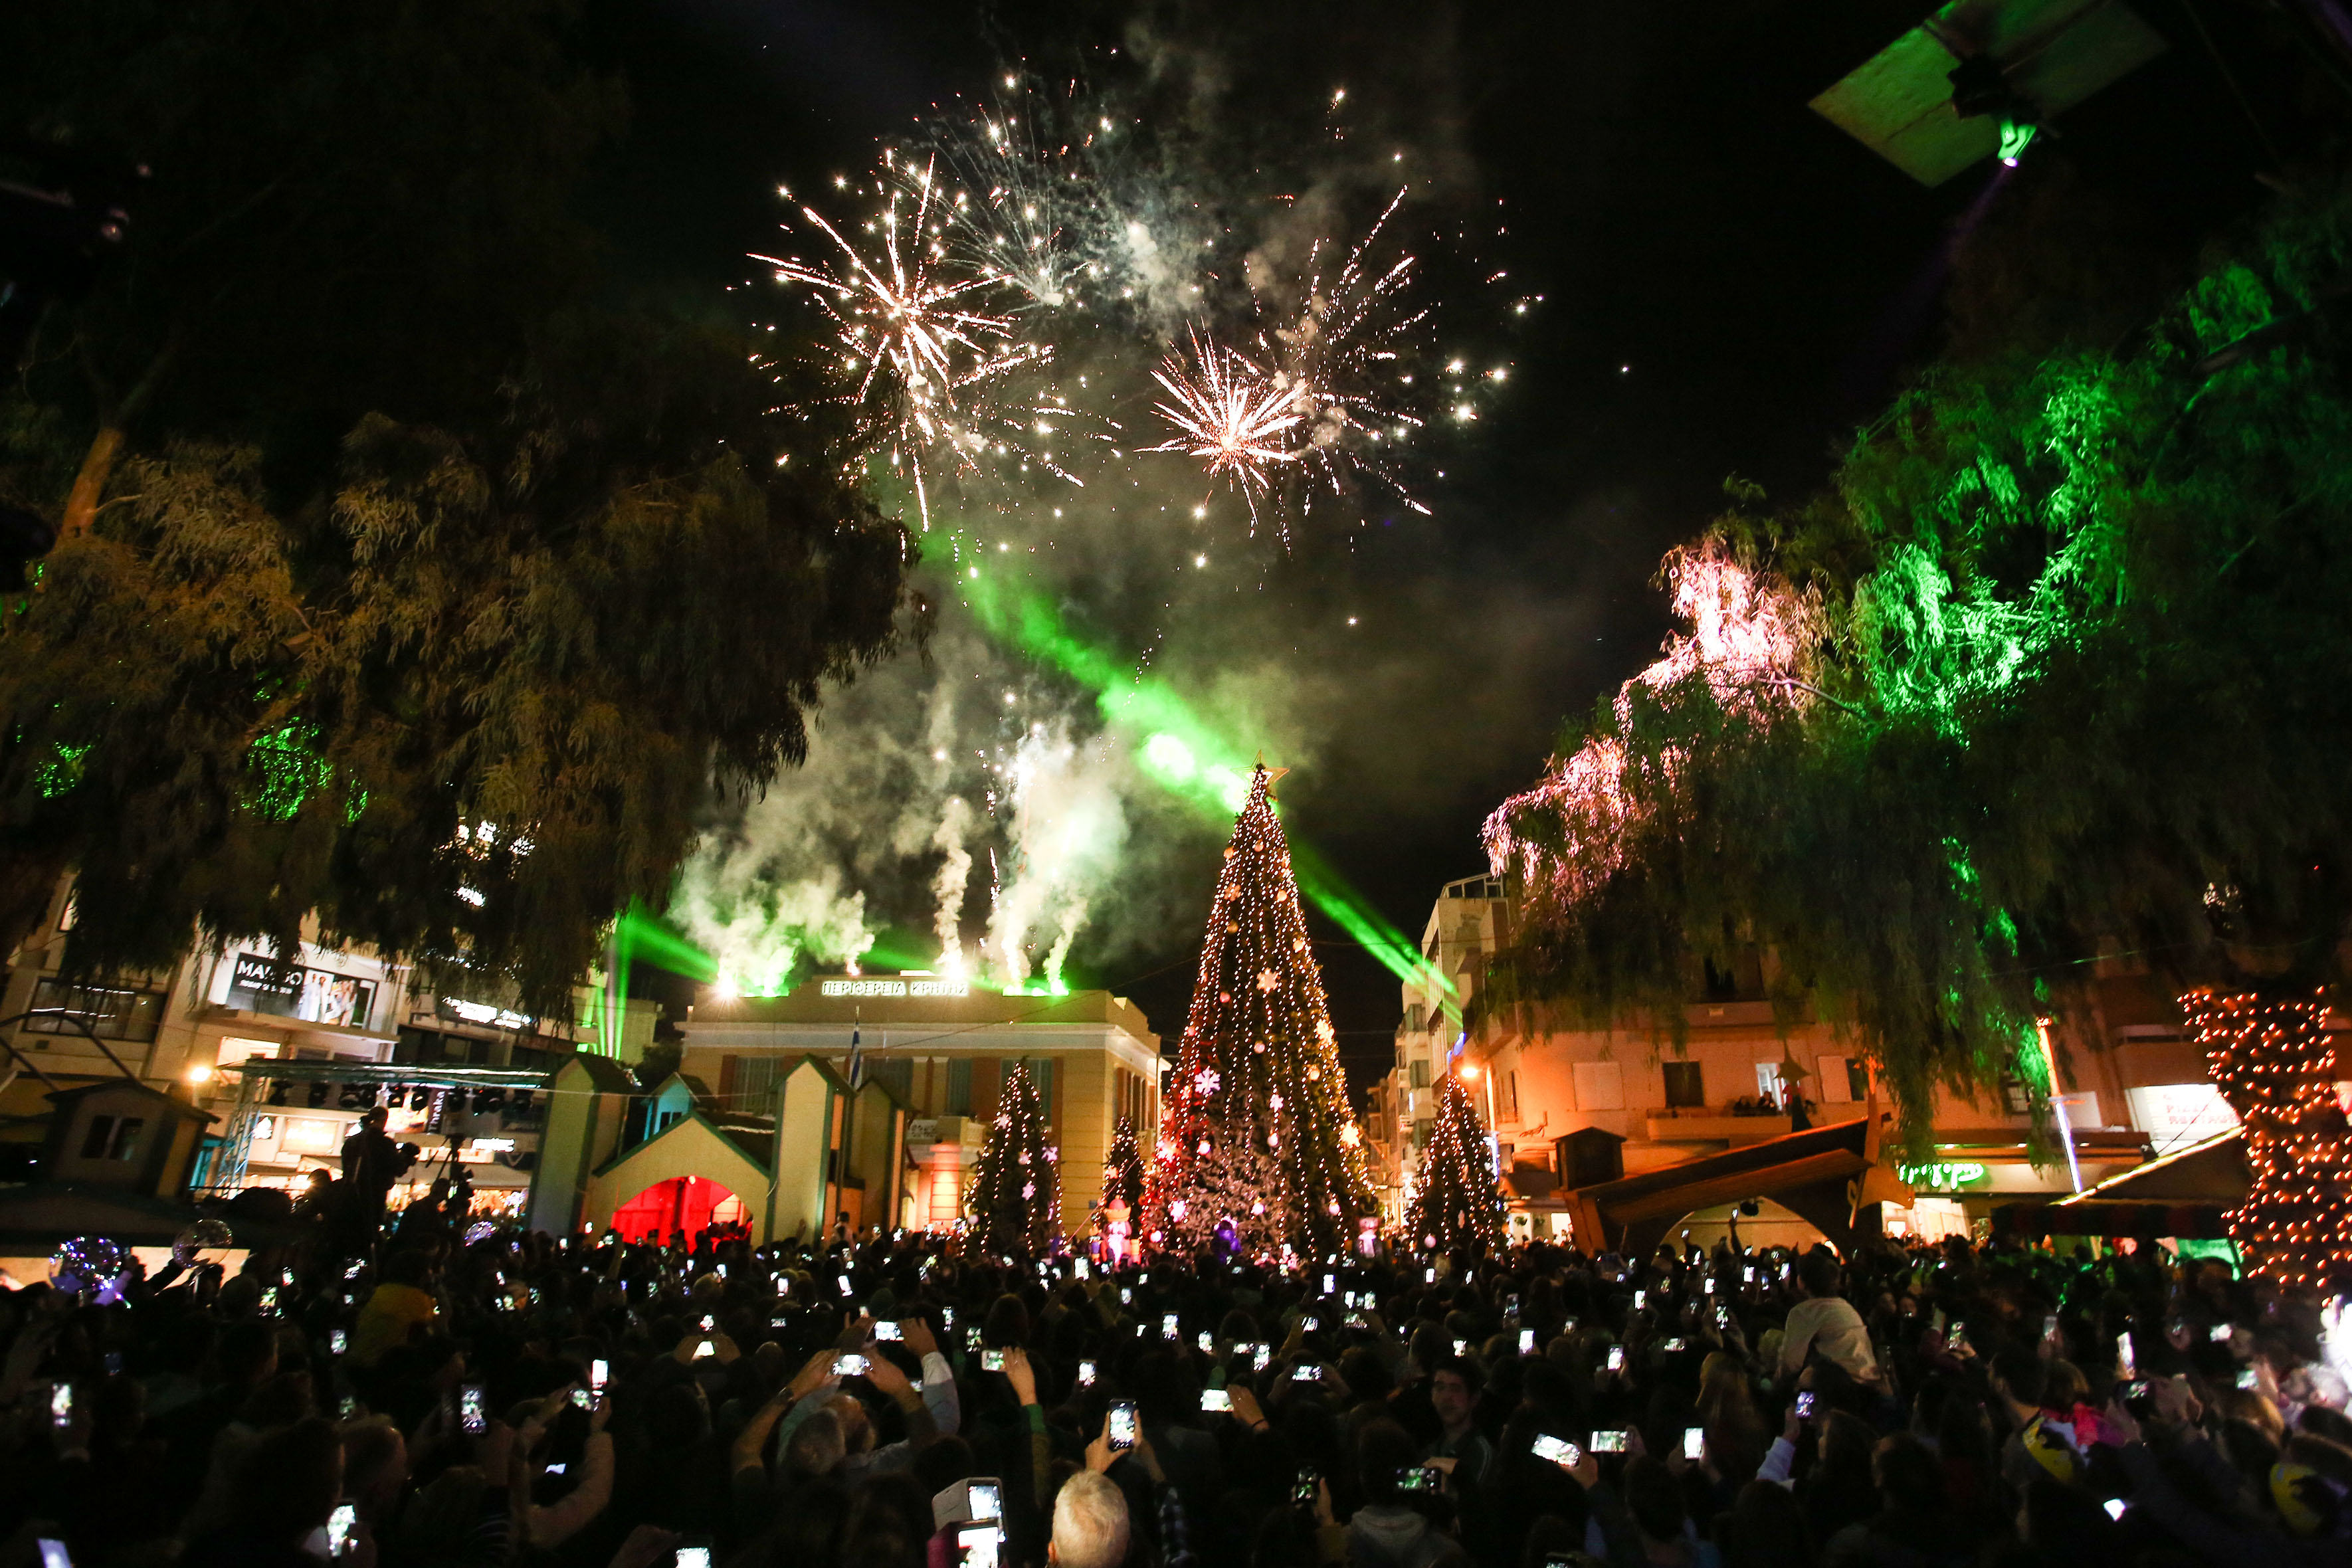 Χιλιάδες κόσμου στη φωταγώγηση του δέντρου στο Χριστουγεννιάτικο Κάστρο (φωτο)